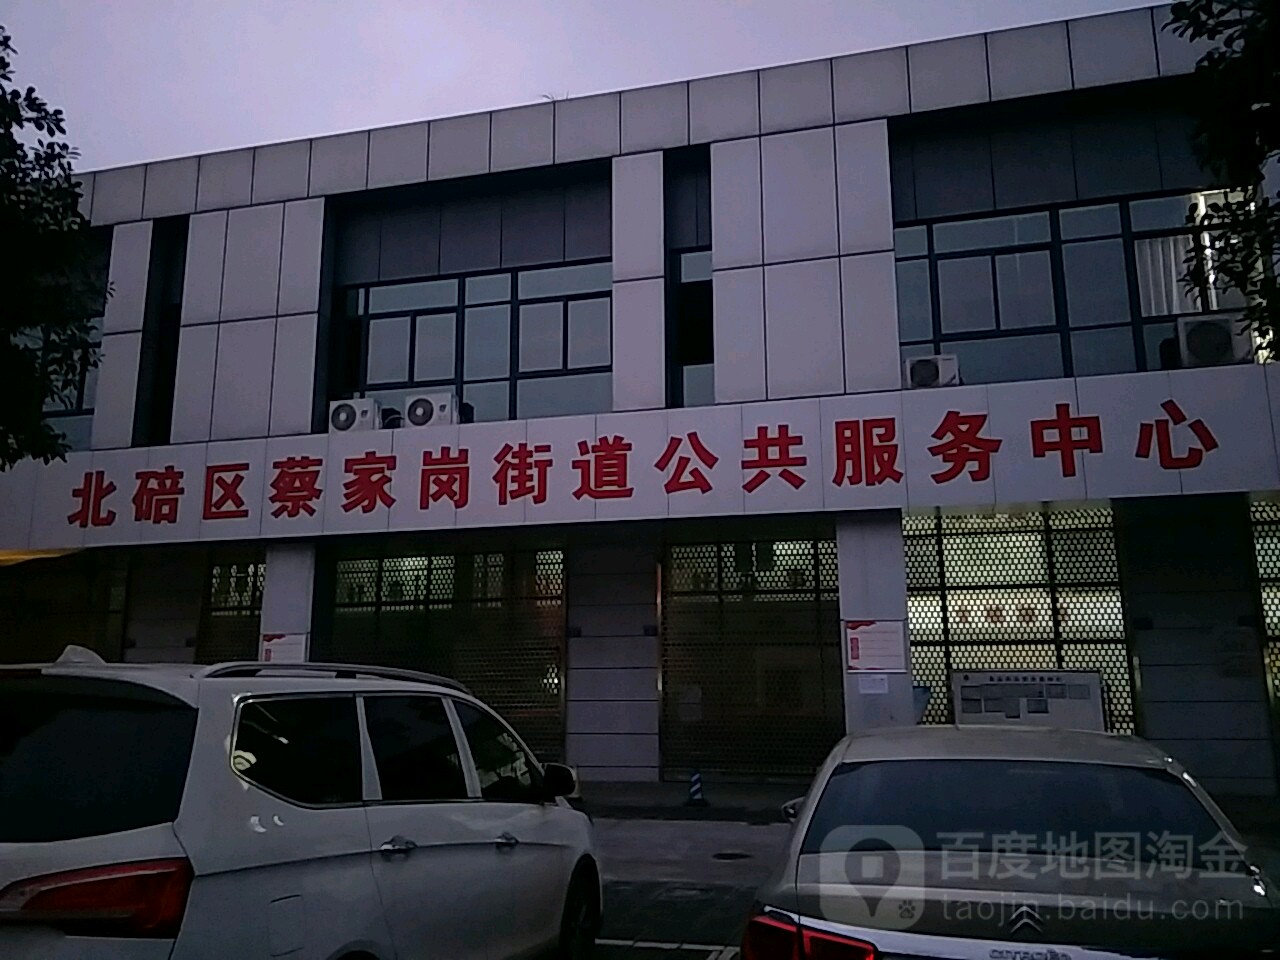 重庆市北碚区凤栖路8号金科集美嘉悦物业服务中心